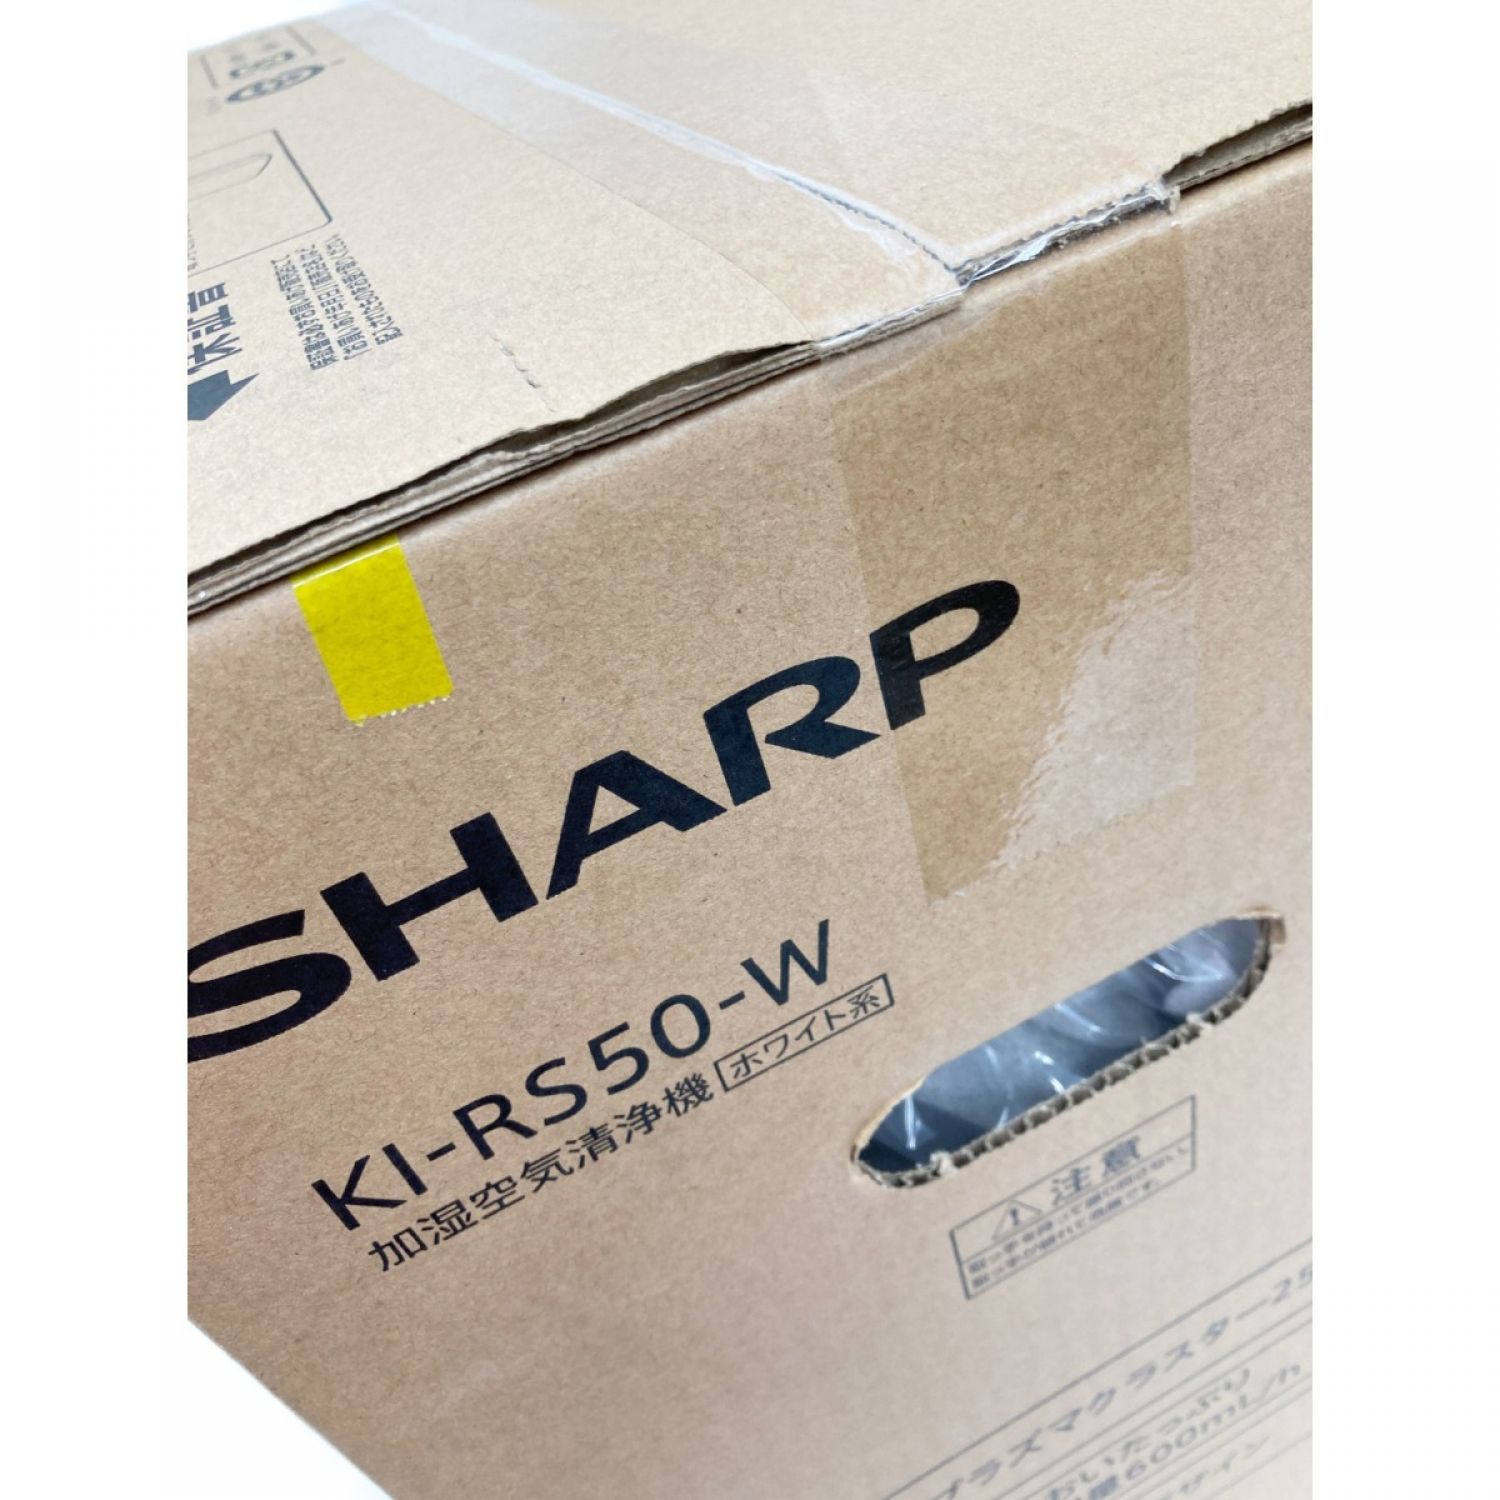 中古】 SHARP シャープ 加湿空気清浄機 ラズマクラスター 25000 KI